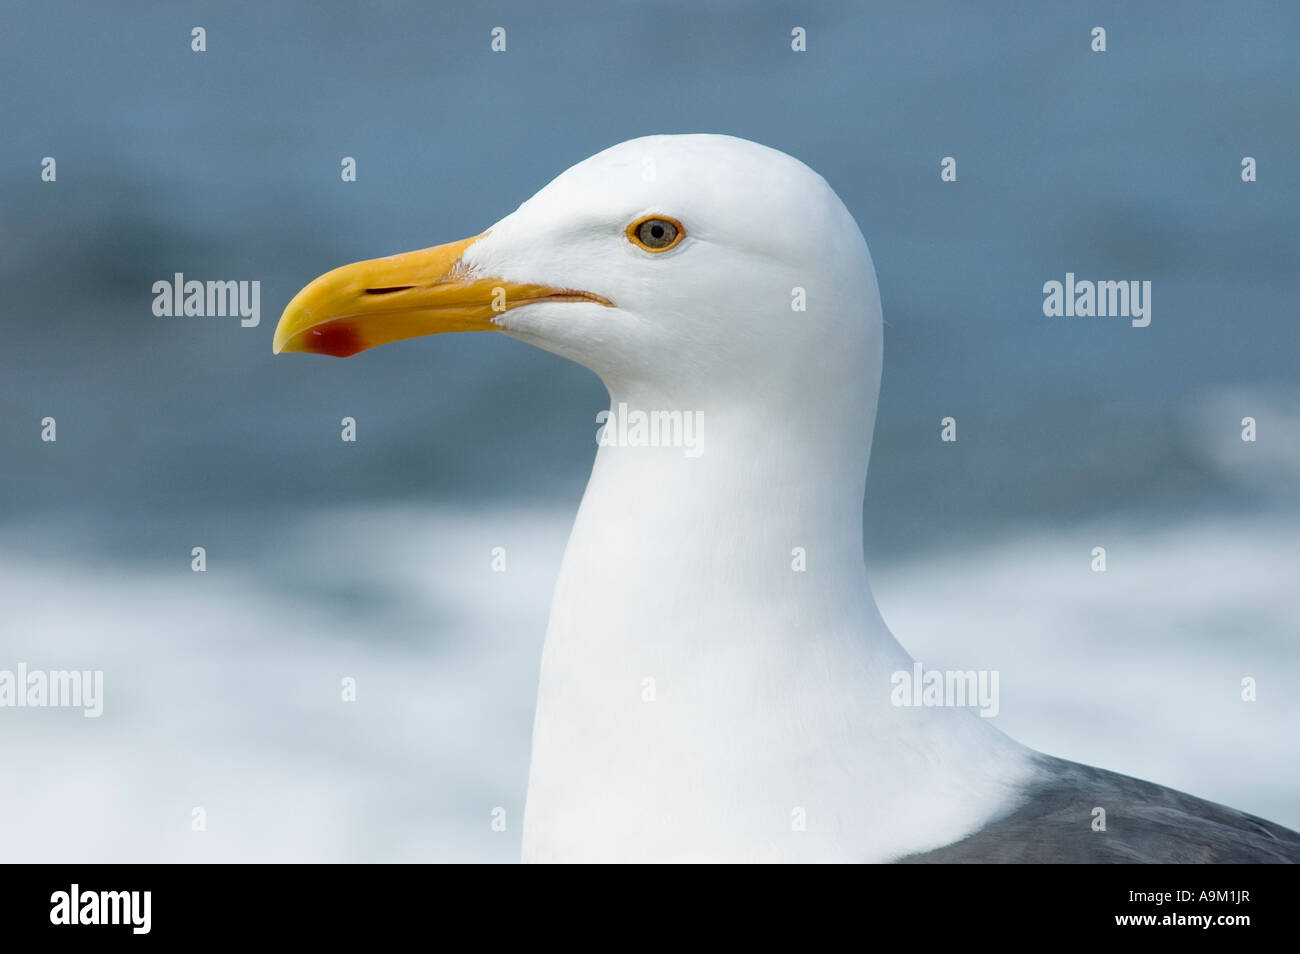 Poser graphique de seagull close up Banque D'Images